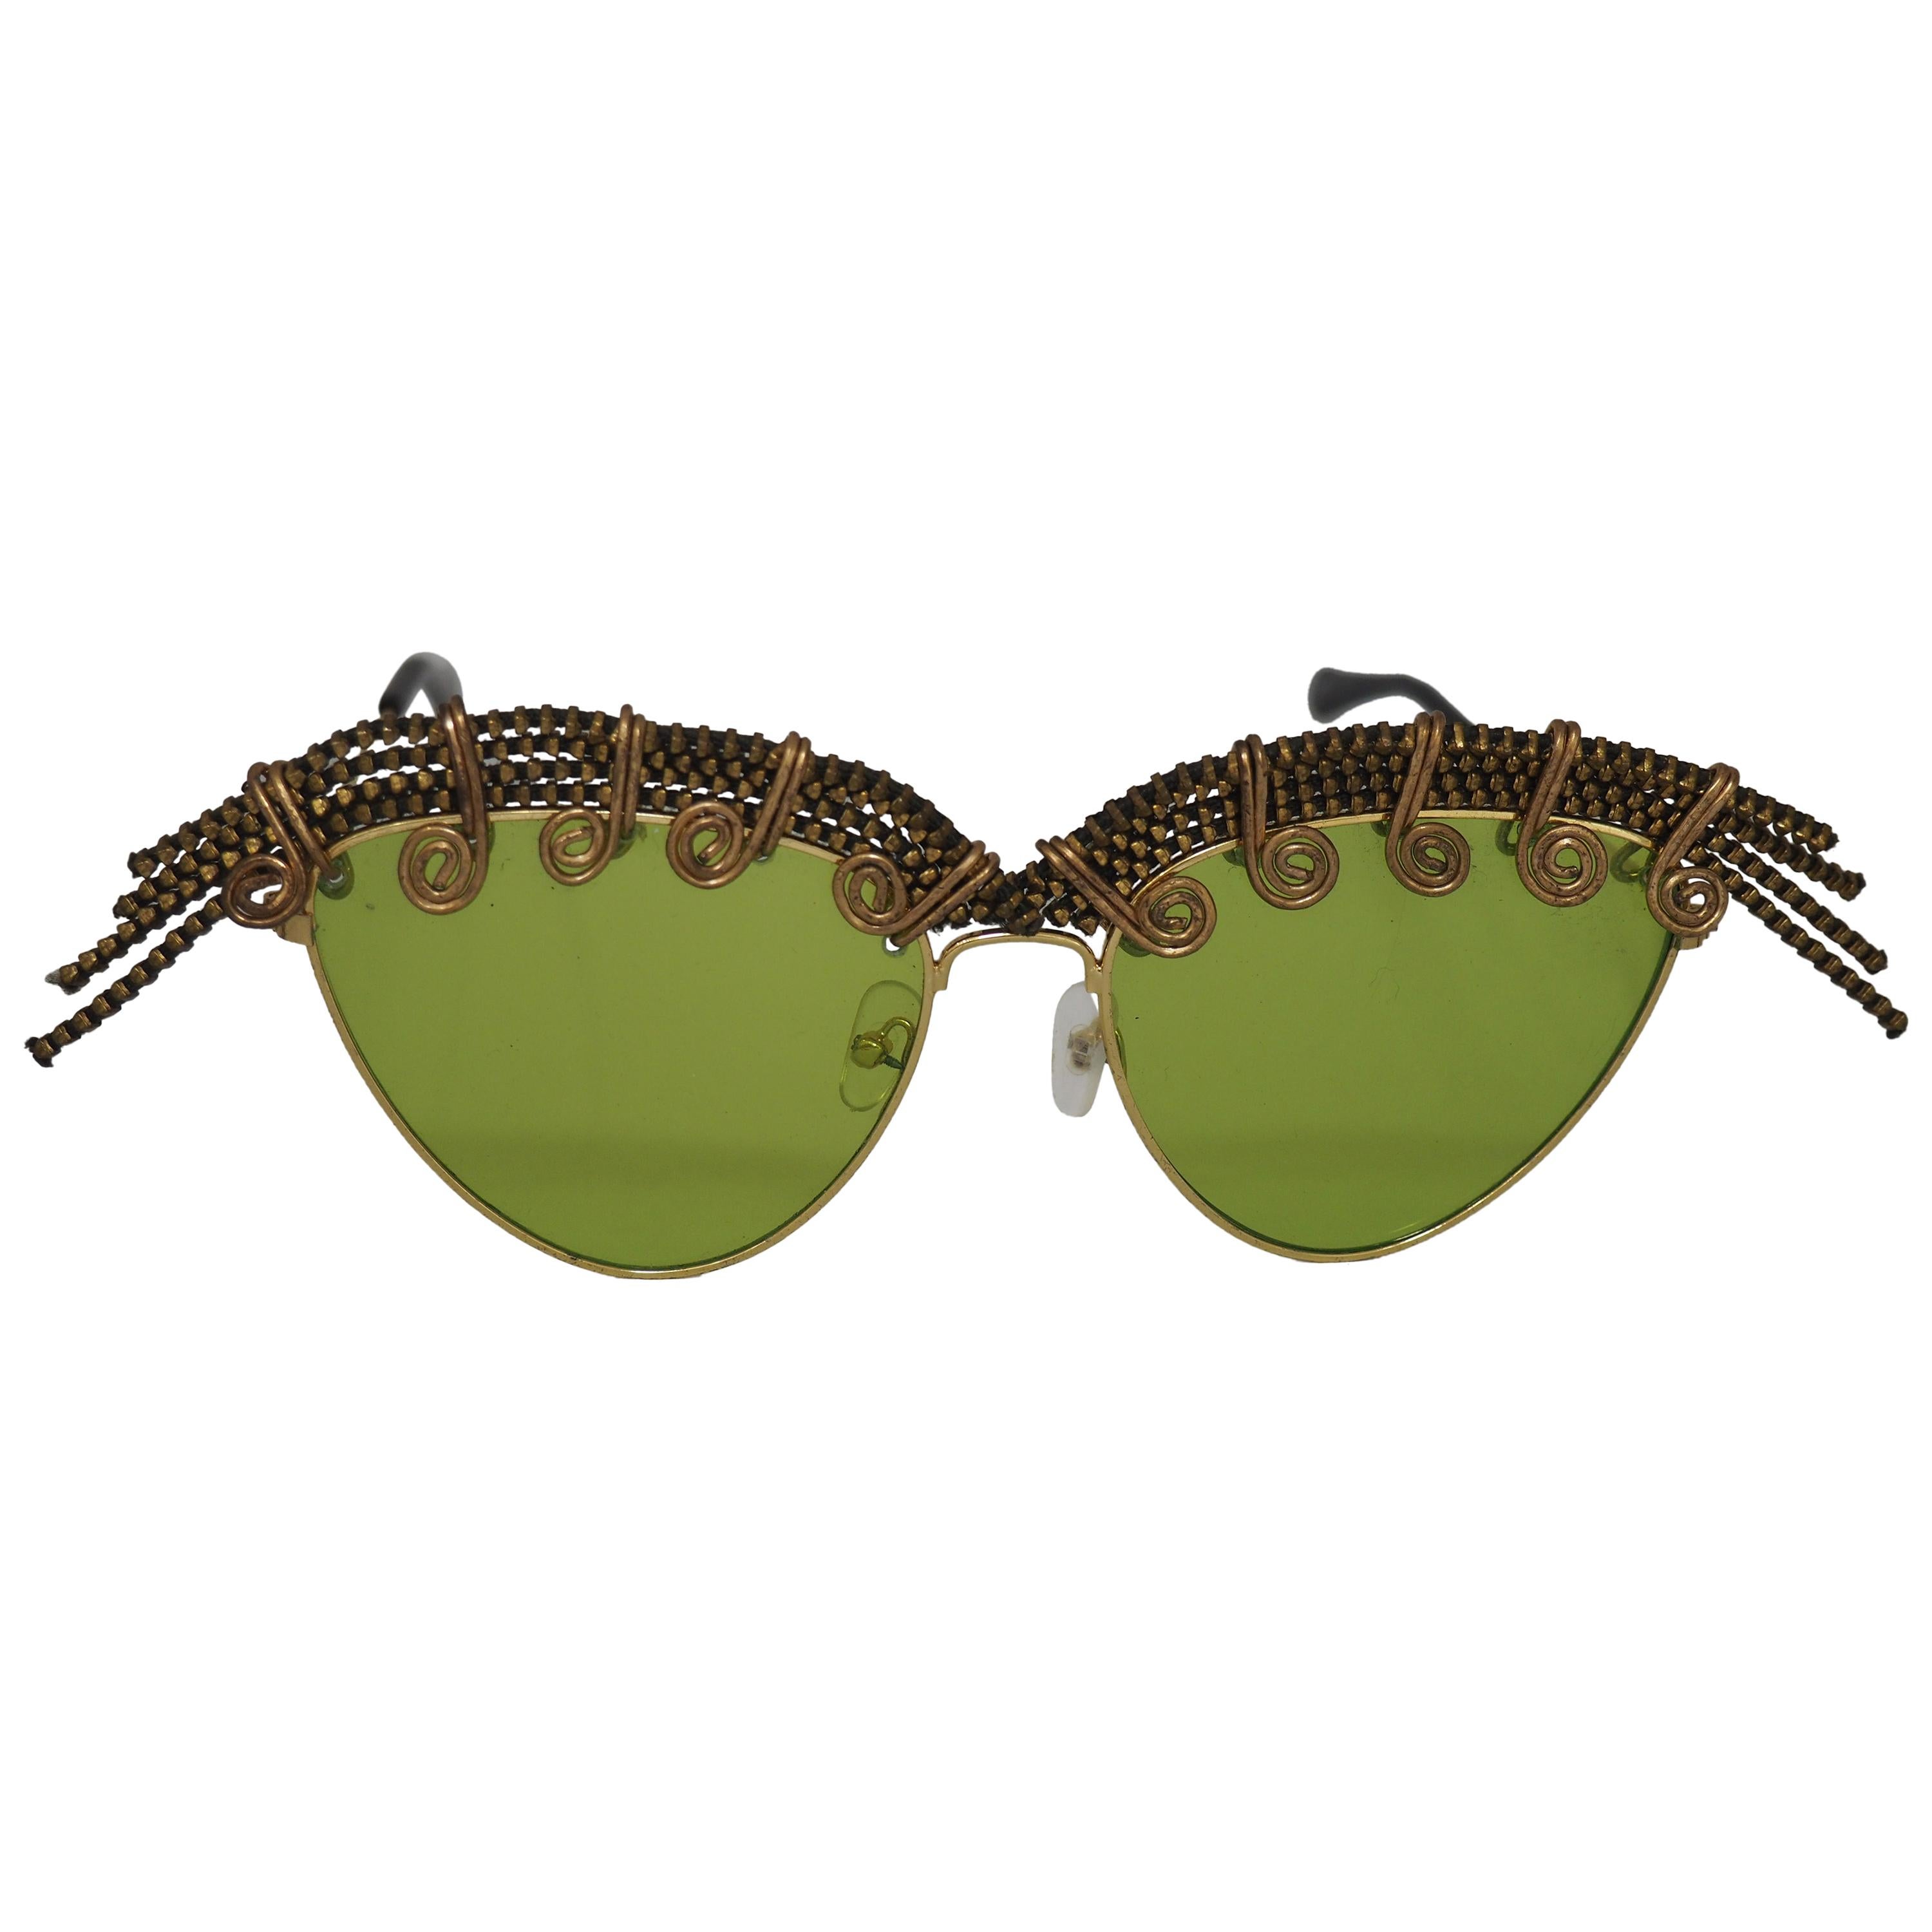 Handmade Kommafa green sunglasses